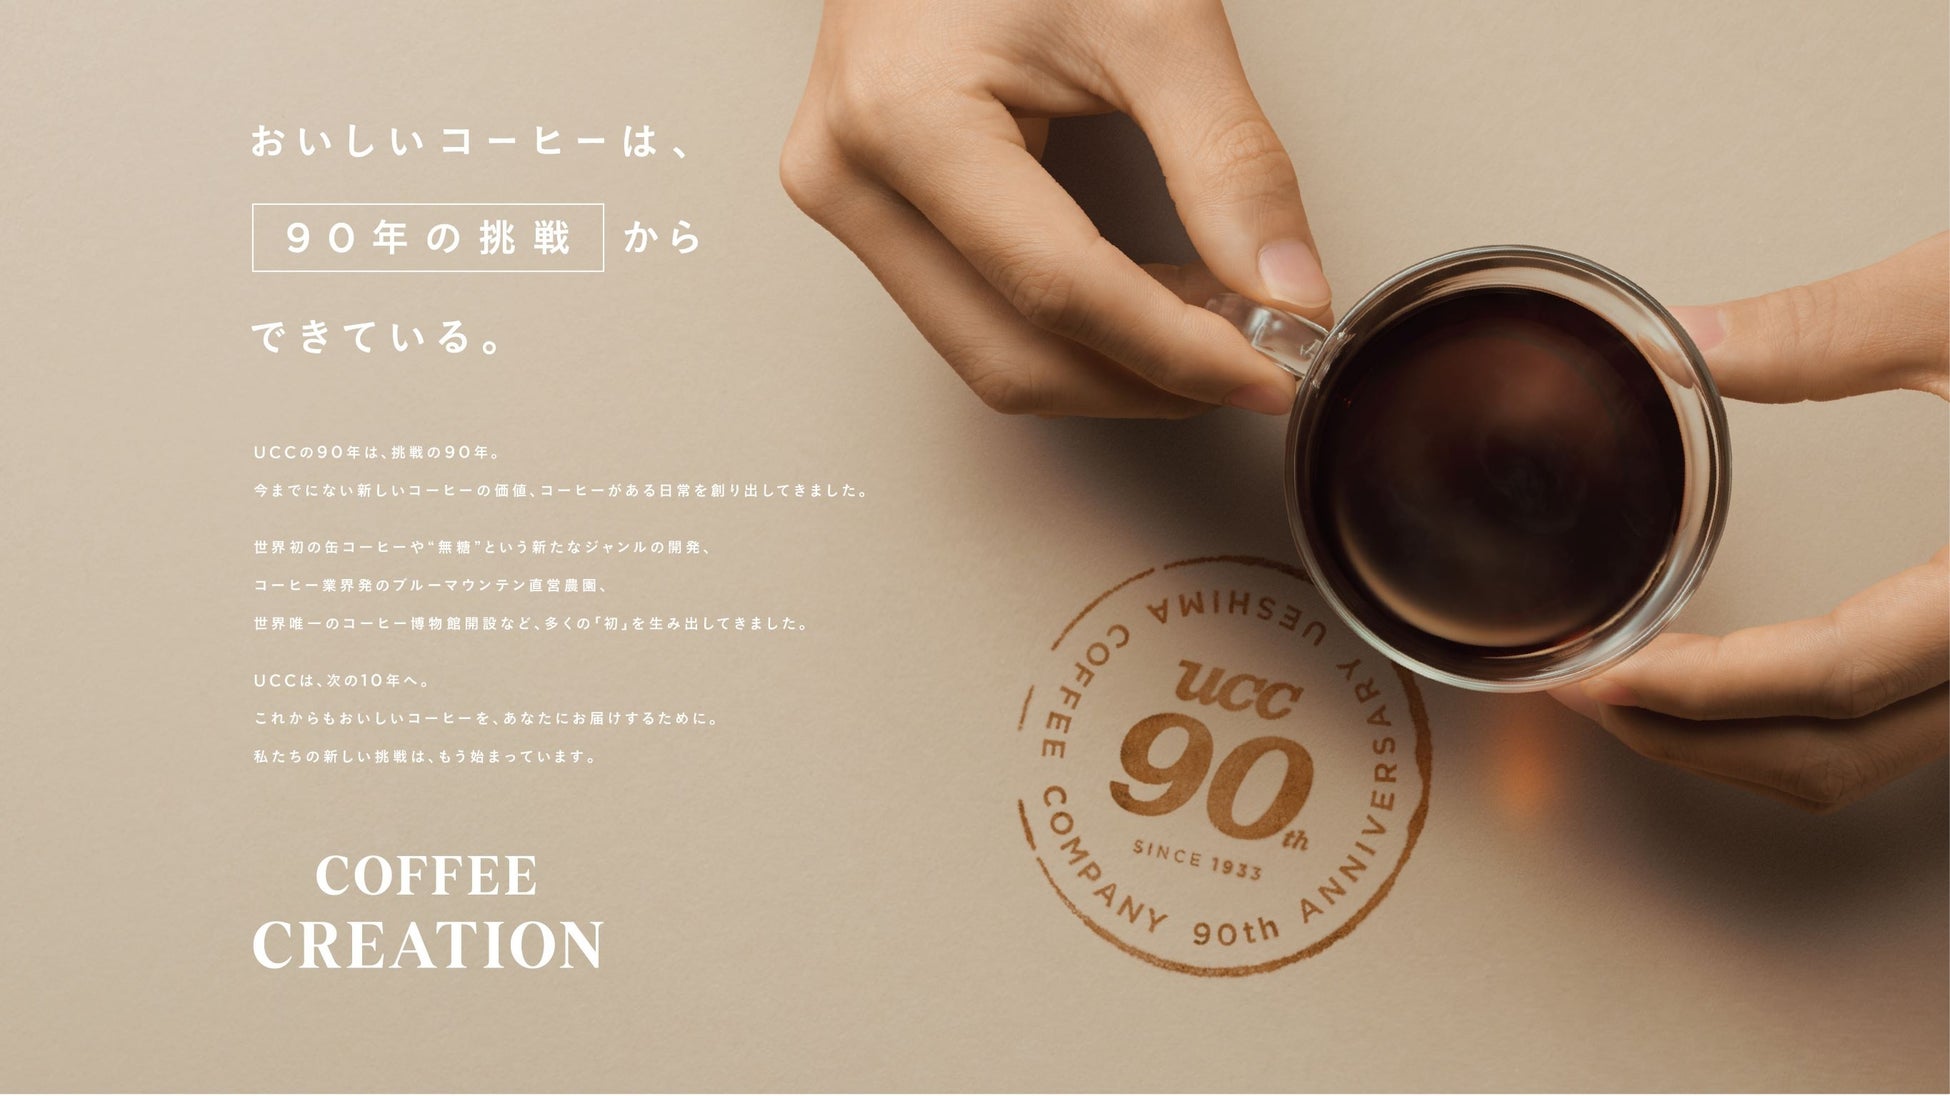 おいしいコーヒーは、「90年の挑戦」からできている。コーヒーと真摯に向き合い続けた90年の挑戦について紹介する「UCC 90周年企画」を3月9日スタートのサブ画像1